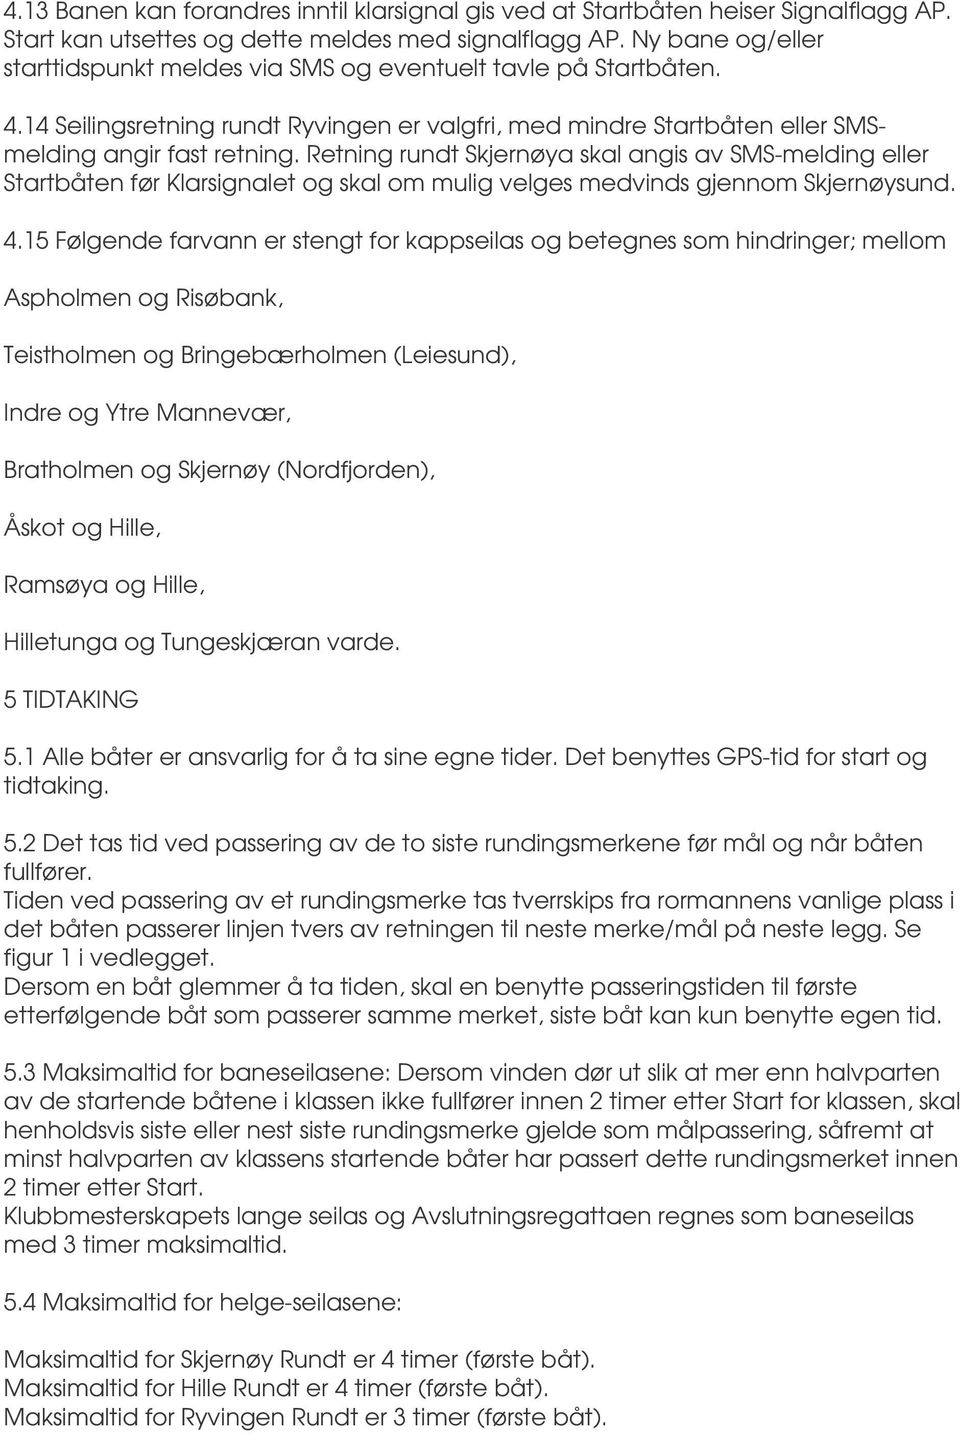 Retning rundt Skjernøya skal angis av SMS-melding eller Startbåten før Klarsignalet og skal om mulig velges medvinds gjennom Skjernøysund. 4.